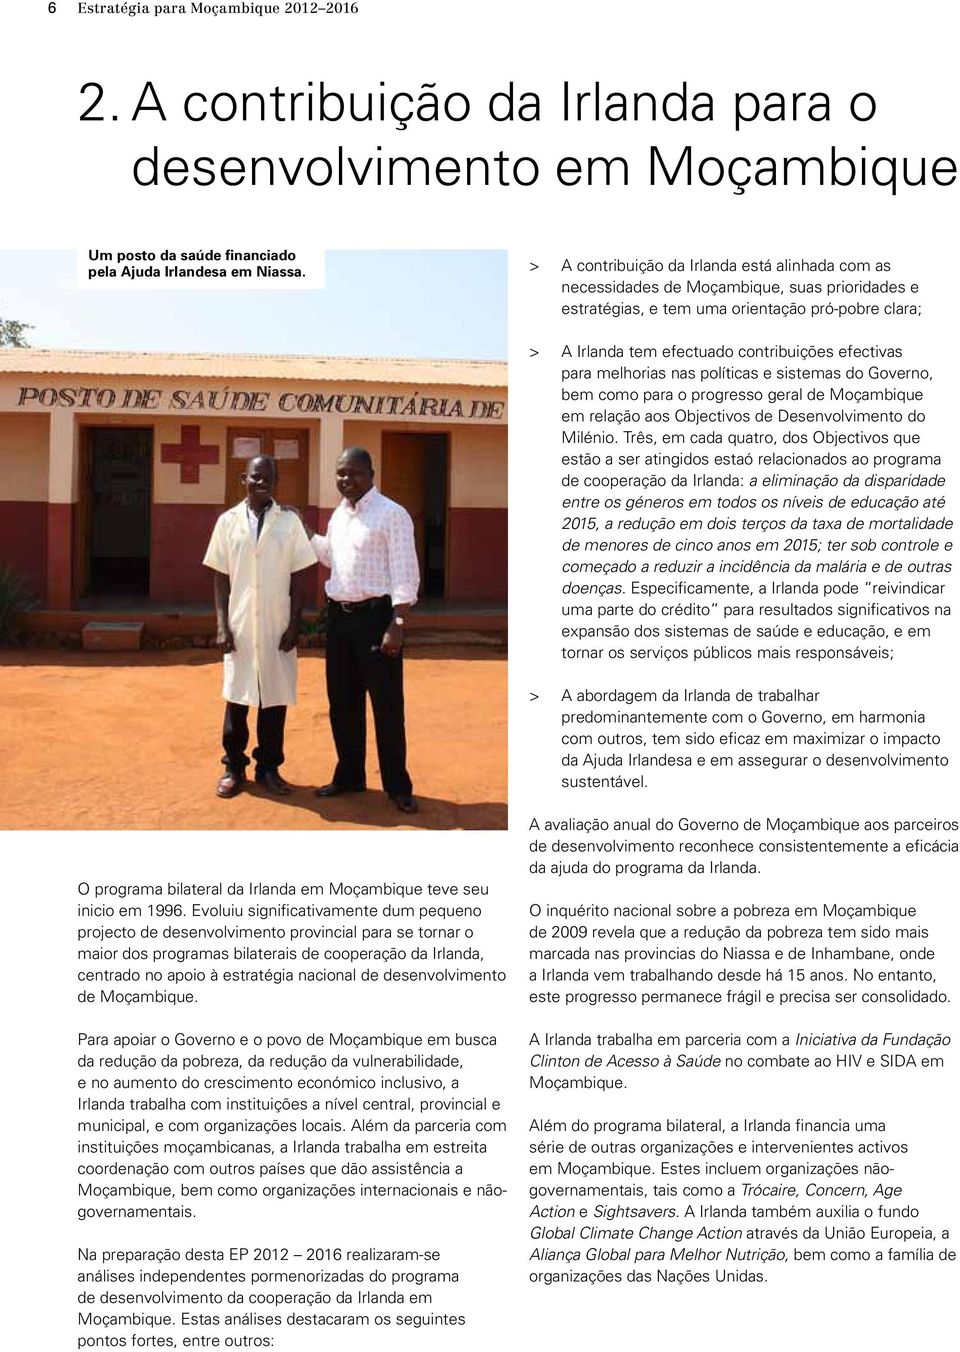 efectivas para melhorias nas políticas e sistemas do Governo, bem como para o progresso geral de Moçambique em relação aos Objectivos de Desenvolvimento do Milénio.